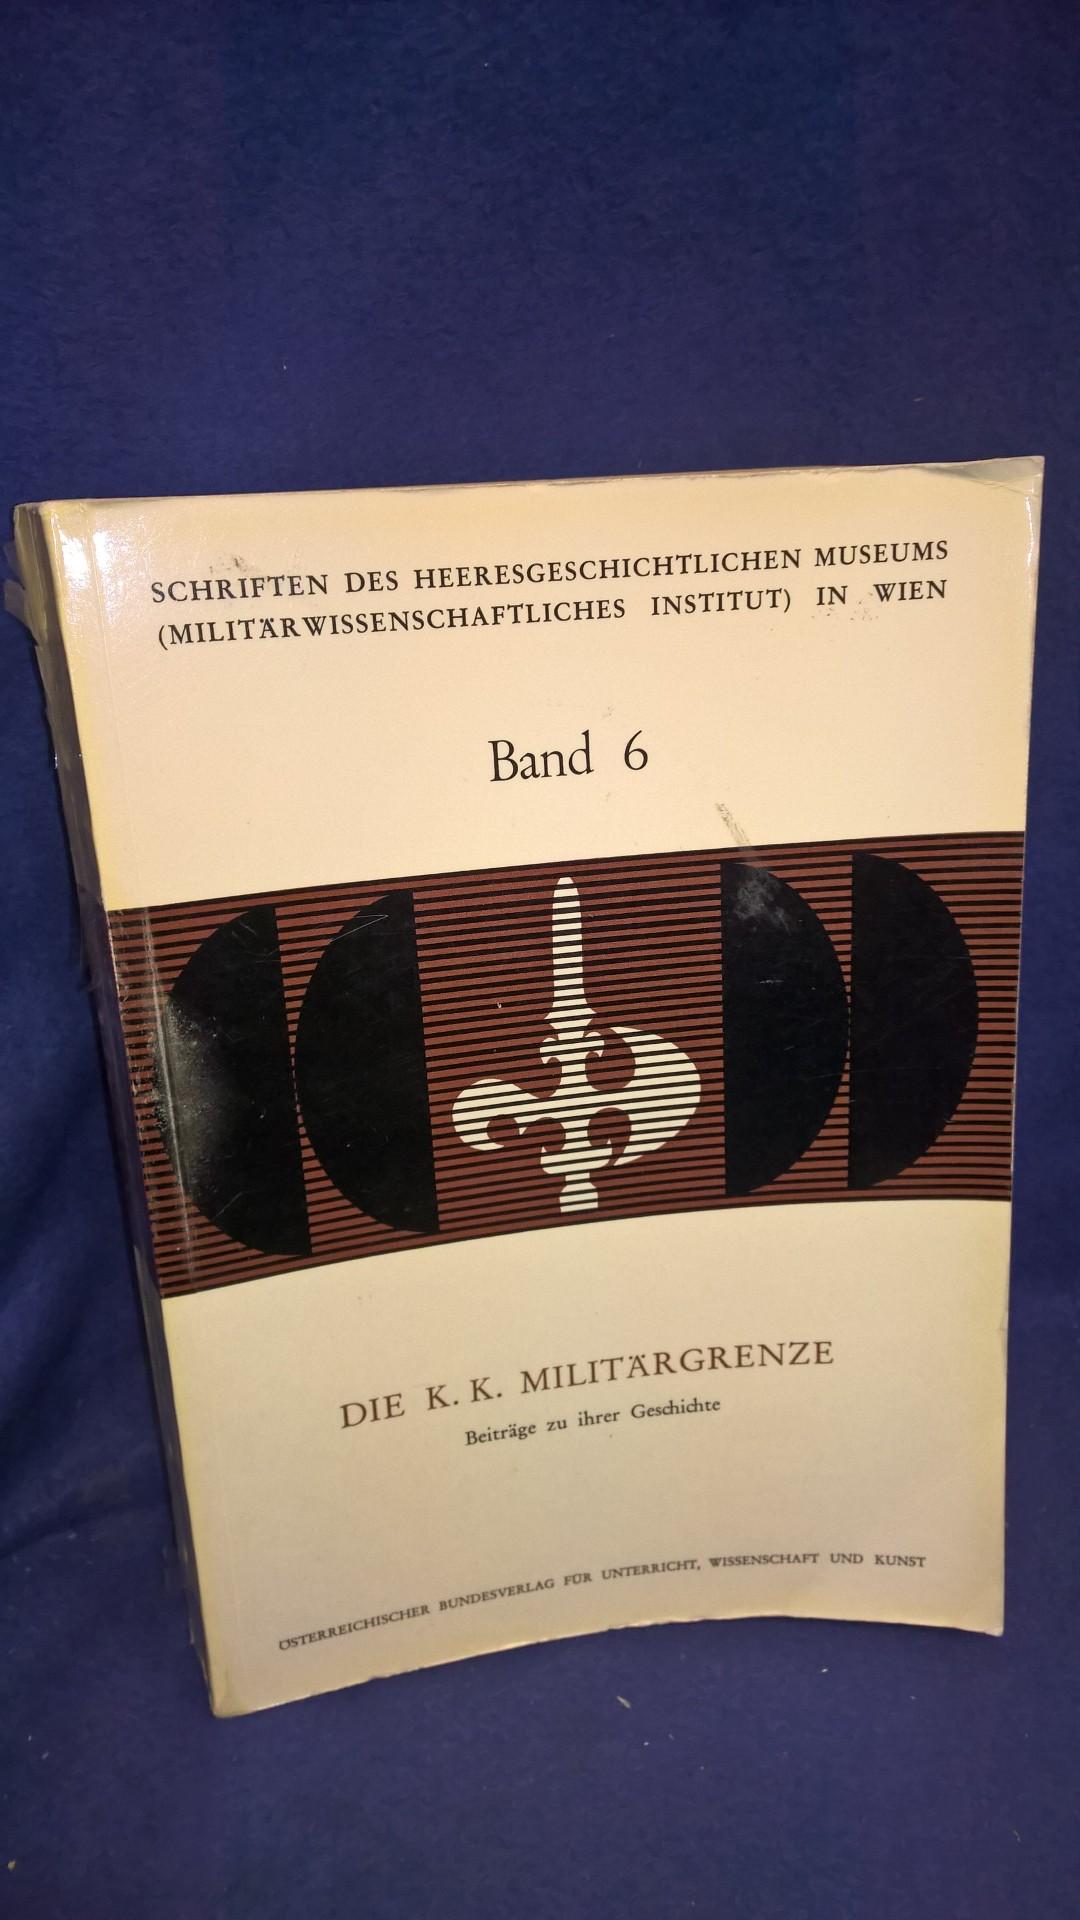 Schriften des Heeresgeschichtlichen Museums in Wien Band 6: Die K. K. Militärgrenze. Beiträge zu ihrer Geschichte.